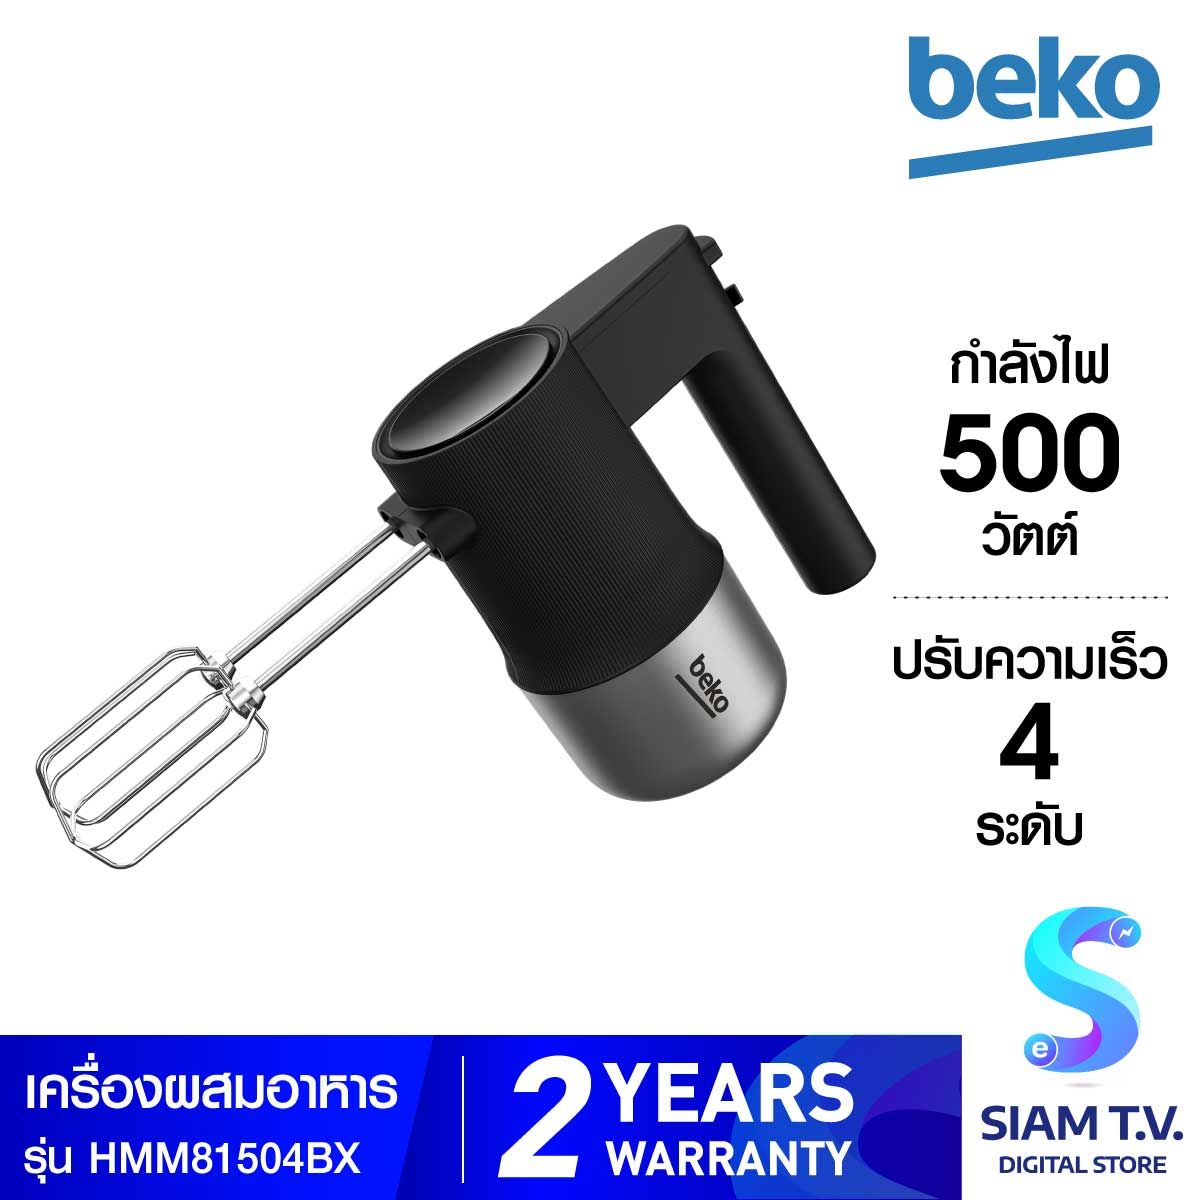 BEKO เครื่องผสมอาหารมือจับ500W สีดำ รุ่นHBA81762BX